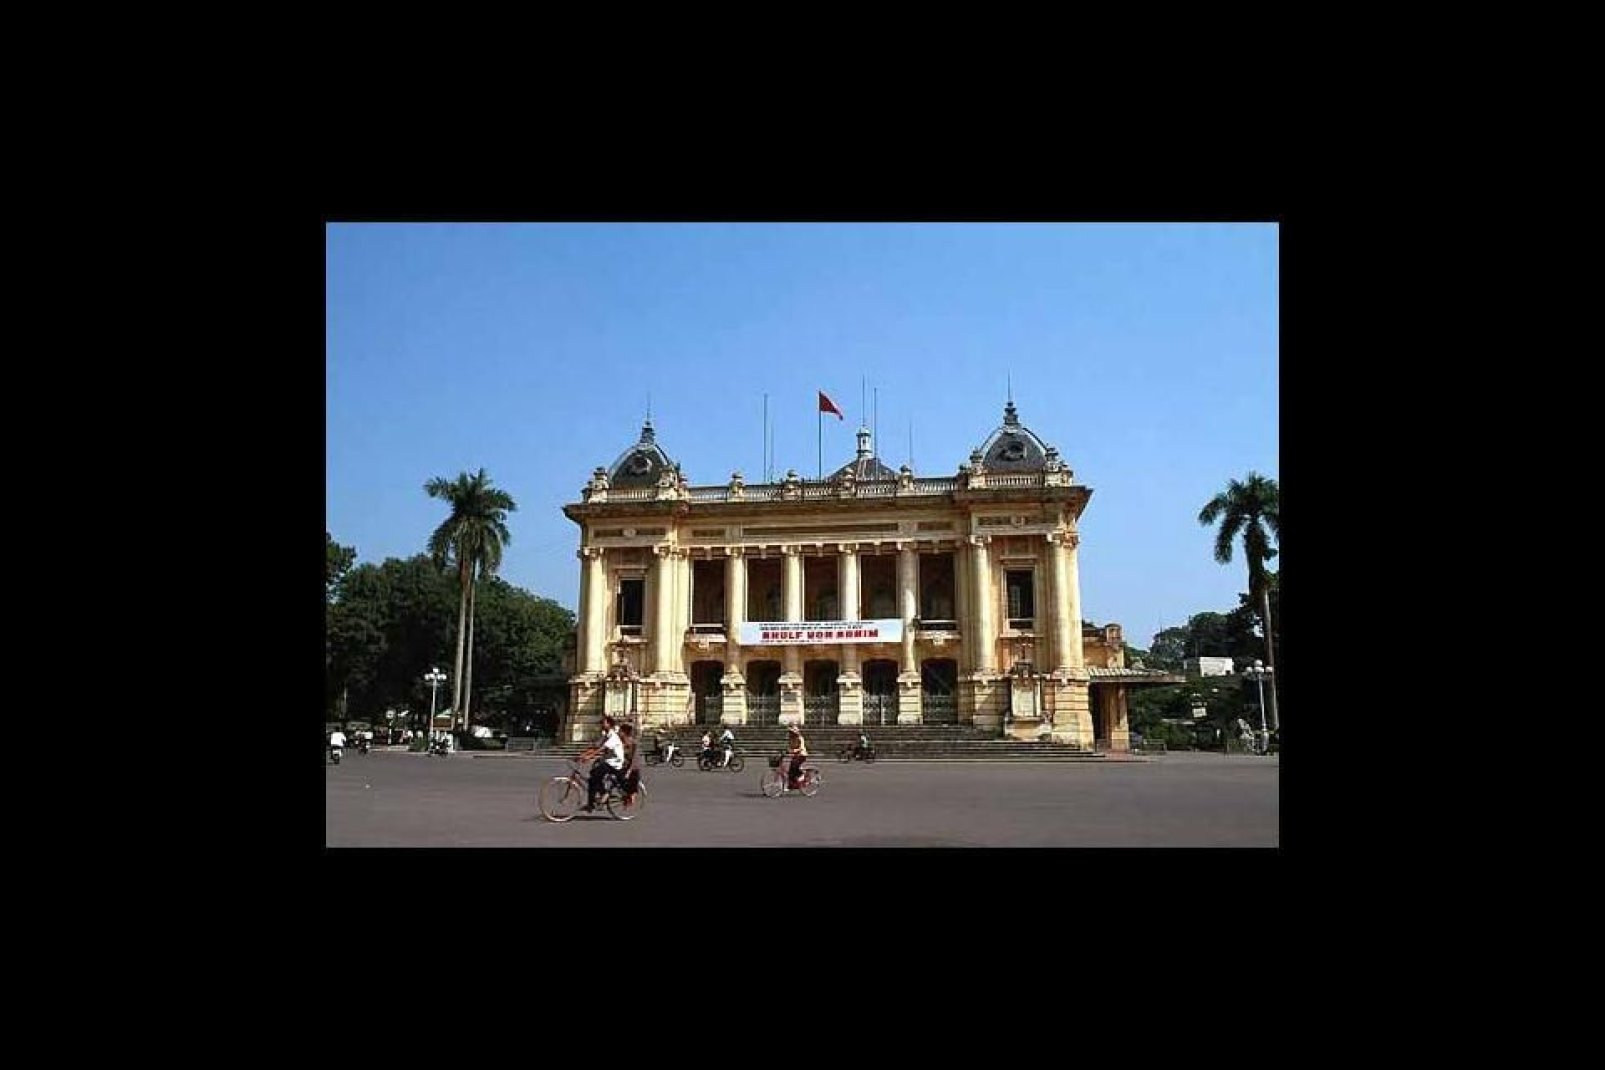 Hanoi ospita diverse tipologie di monumenti: edifici coloniali, fabbricati tradizionali e costruzioni in onore di Ho Chi Minh.